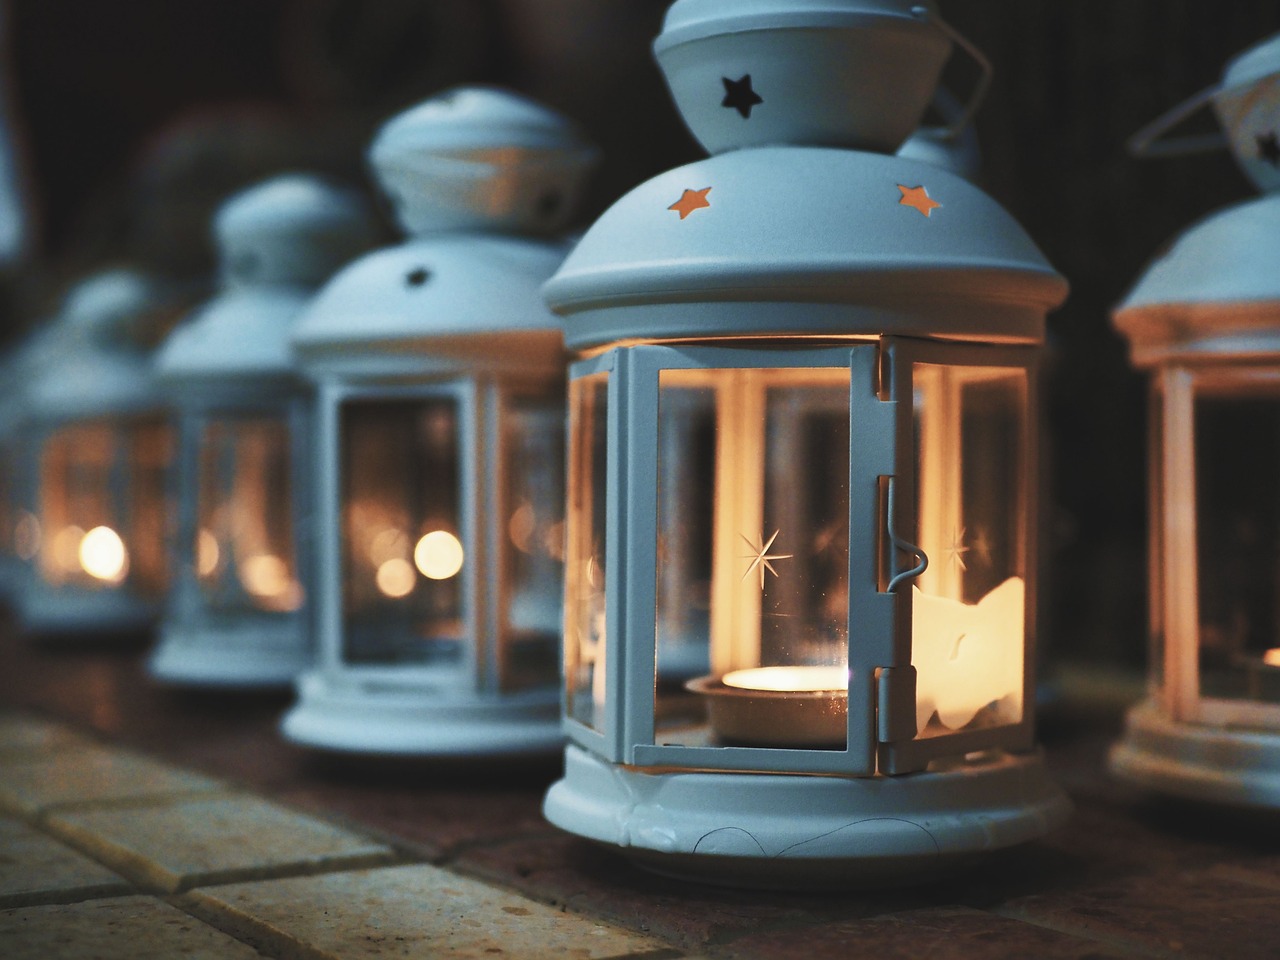 lamps, lanterns, candles-6843881.jpg